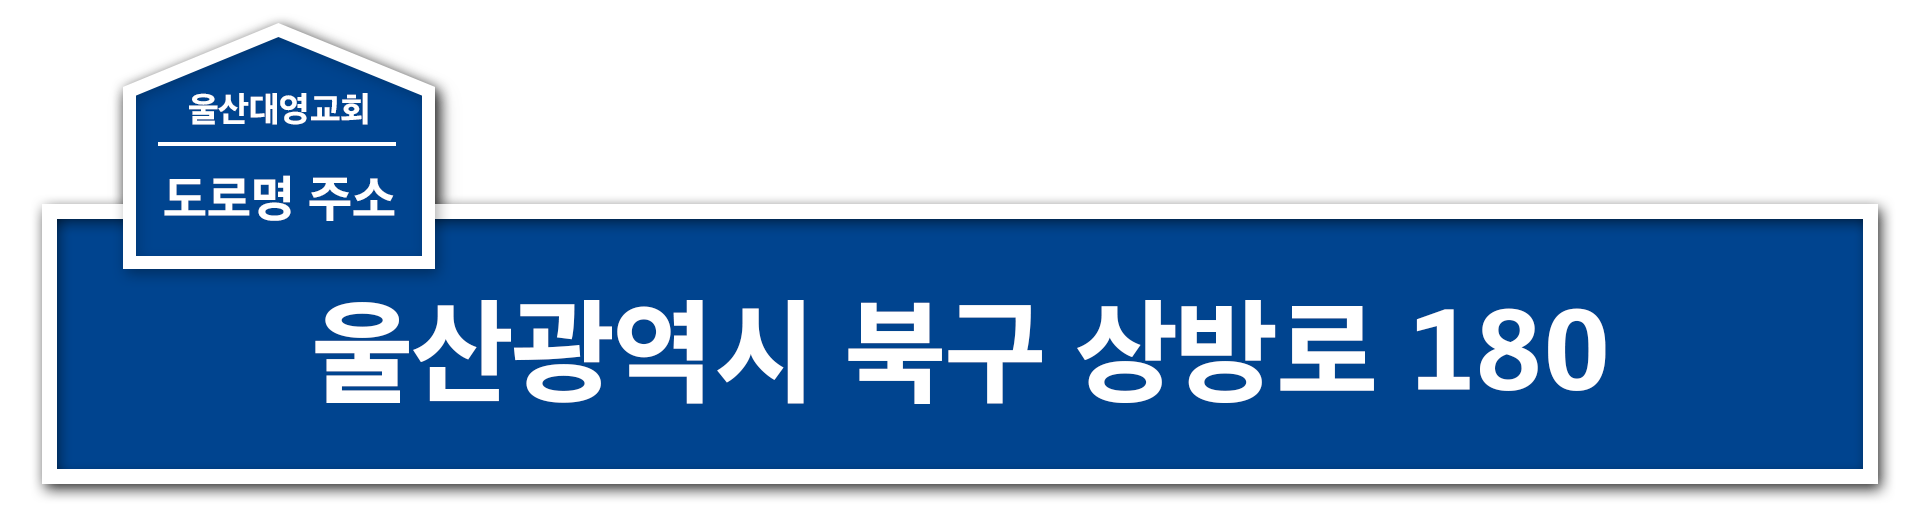 도로명주소 : 울산광역시 북구 상방로 180